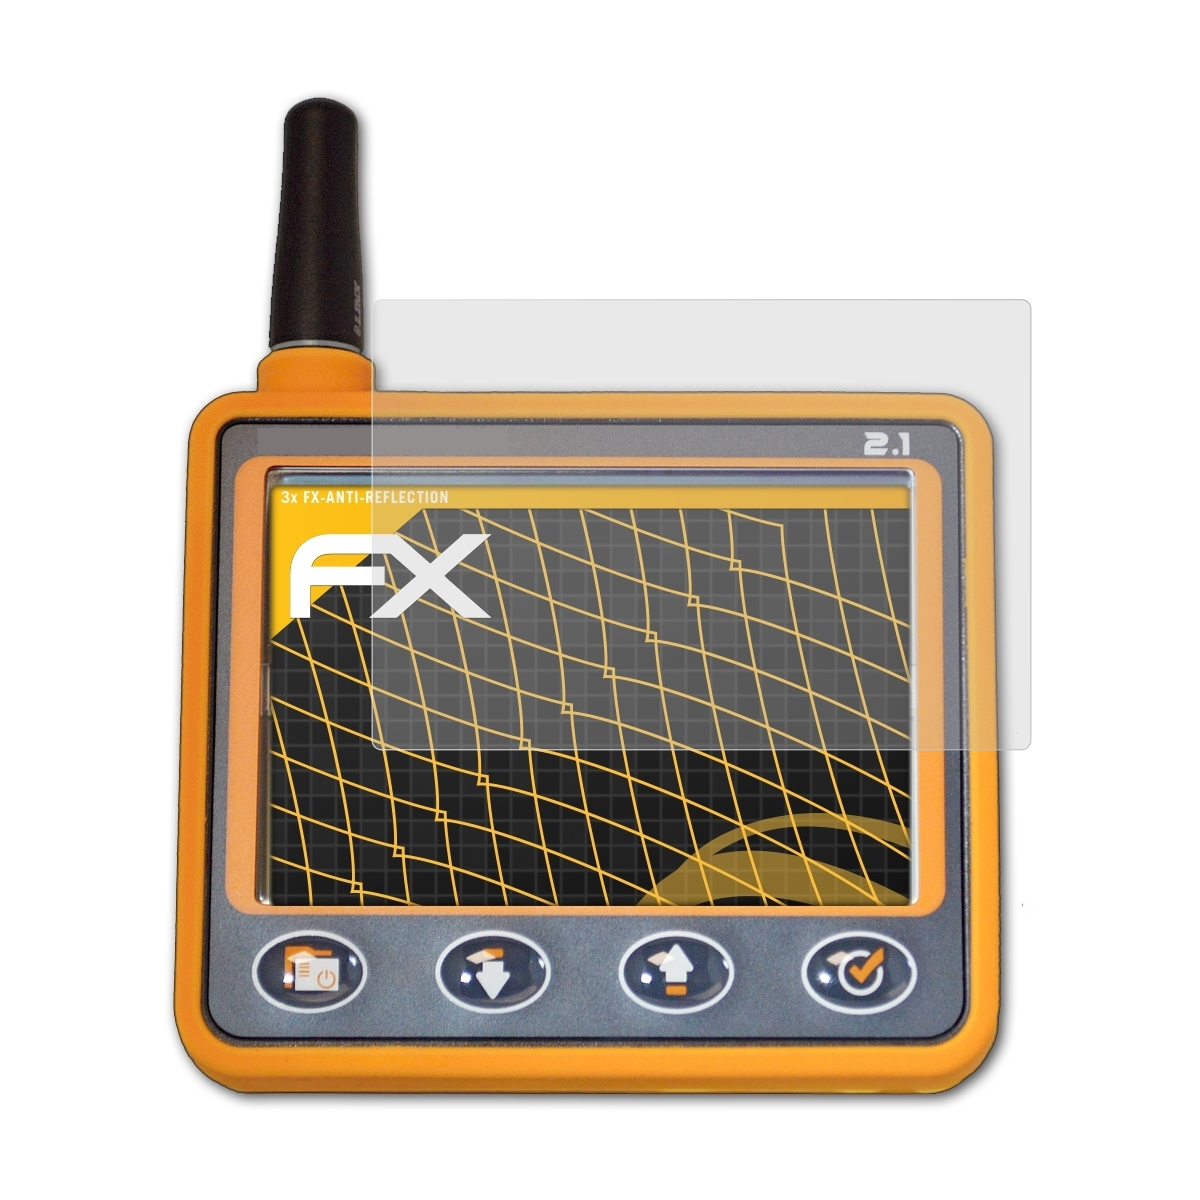 Skytraxx 2.1 mit 3x ATFOLIX Displayschutz(für FANET+) FX-Antireflex